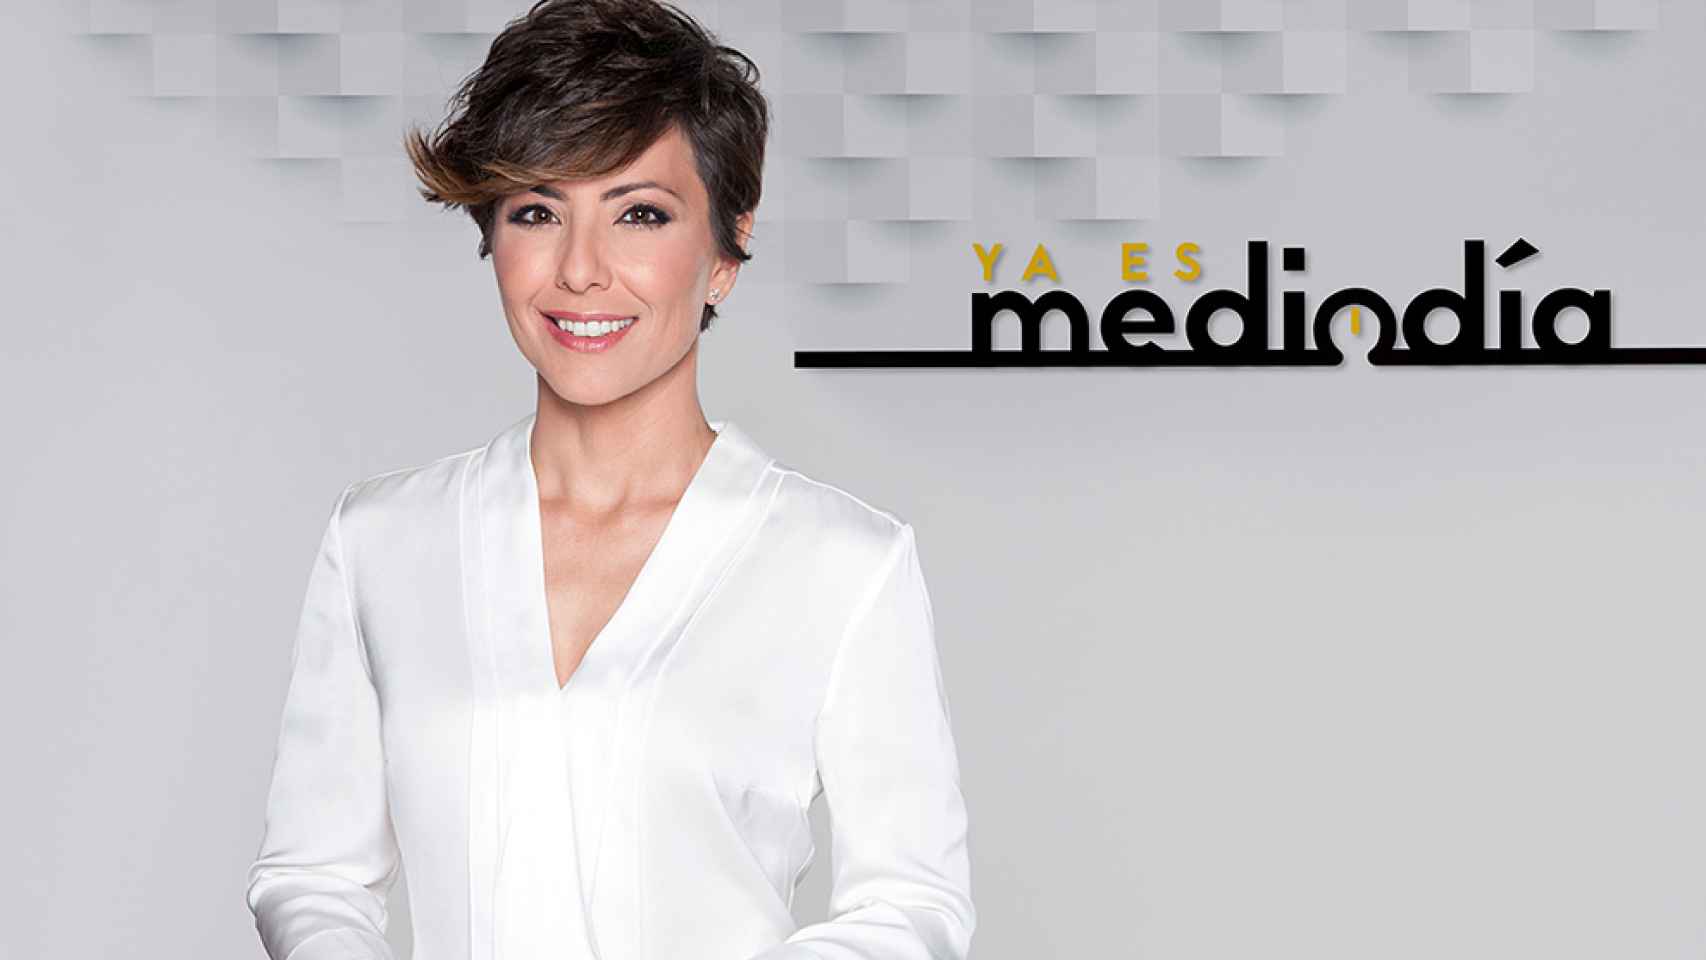 'Ya es mediodía': la política regresa a Telecinco tres años después de su desaparición